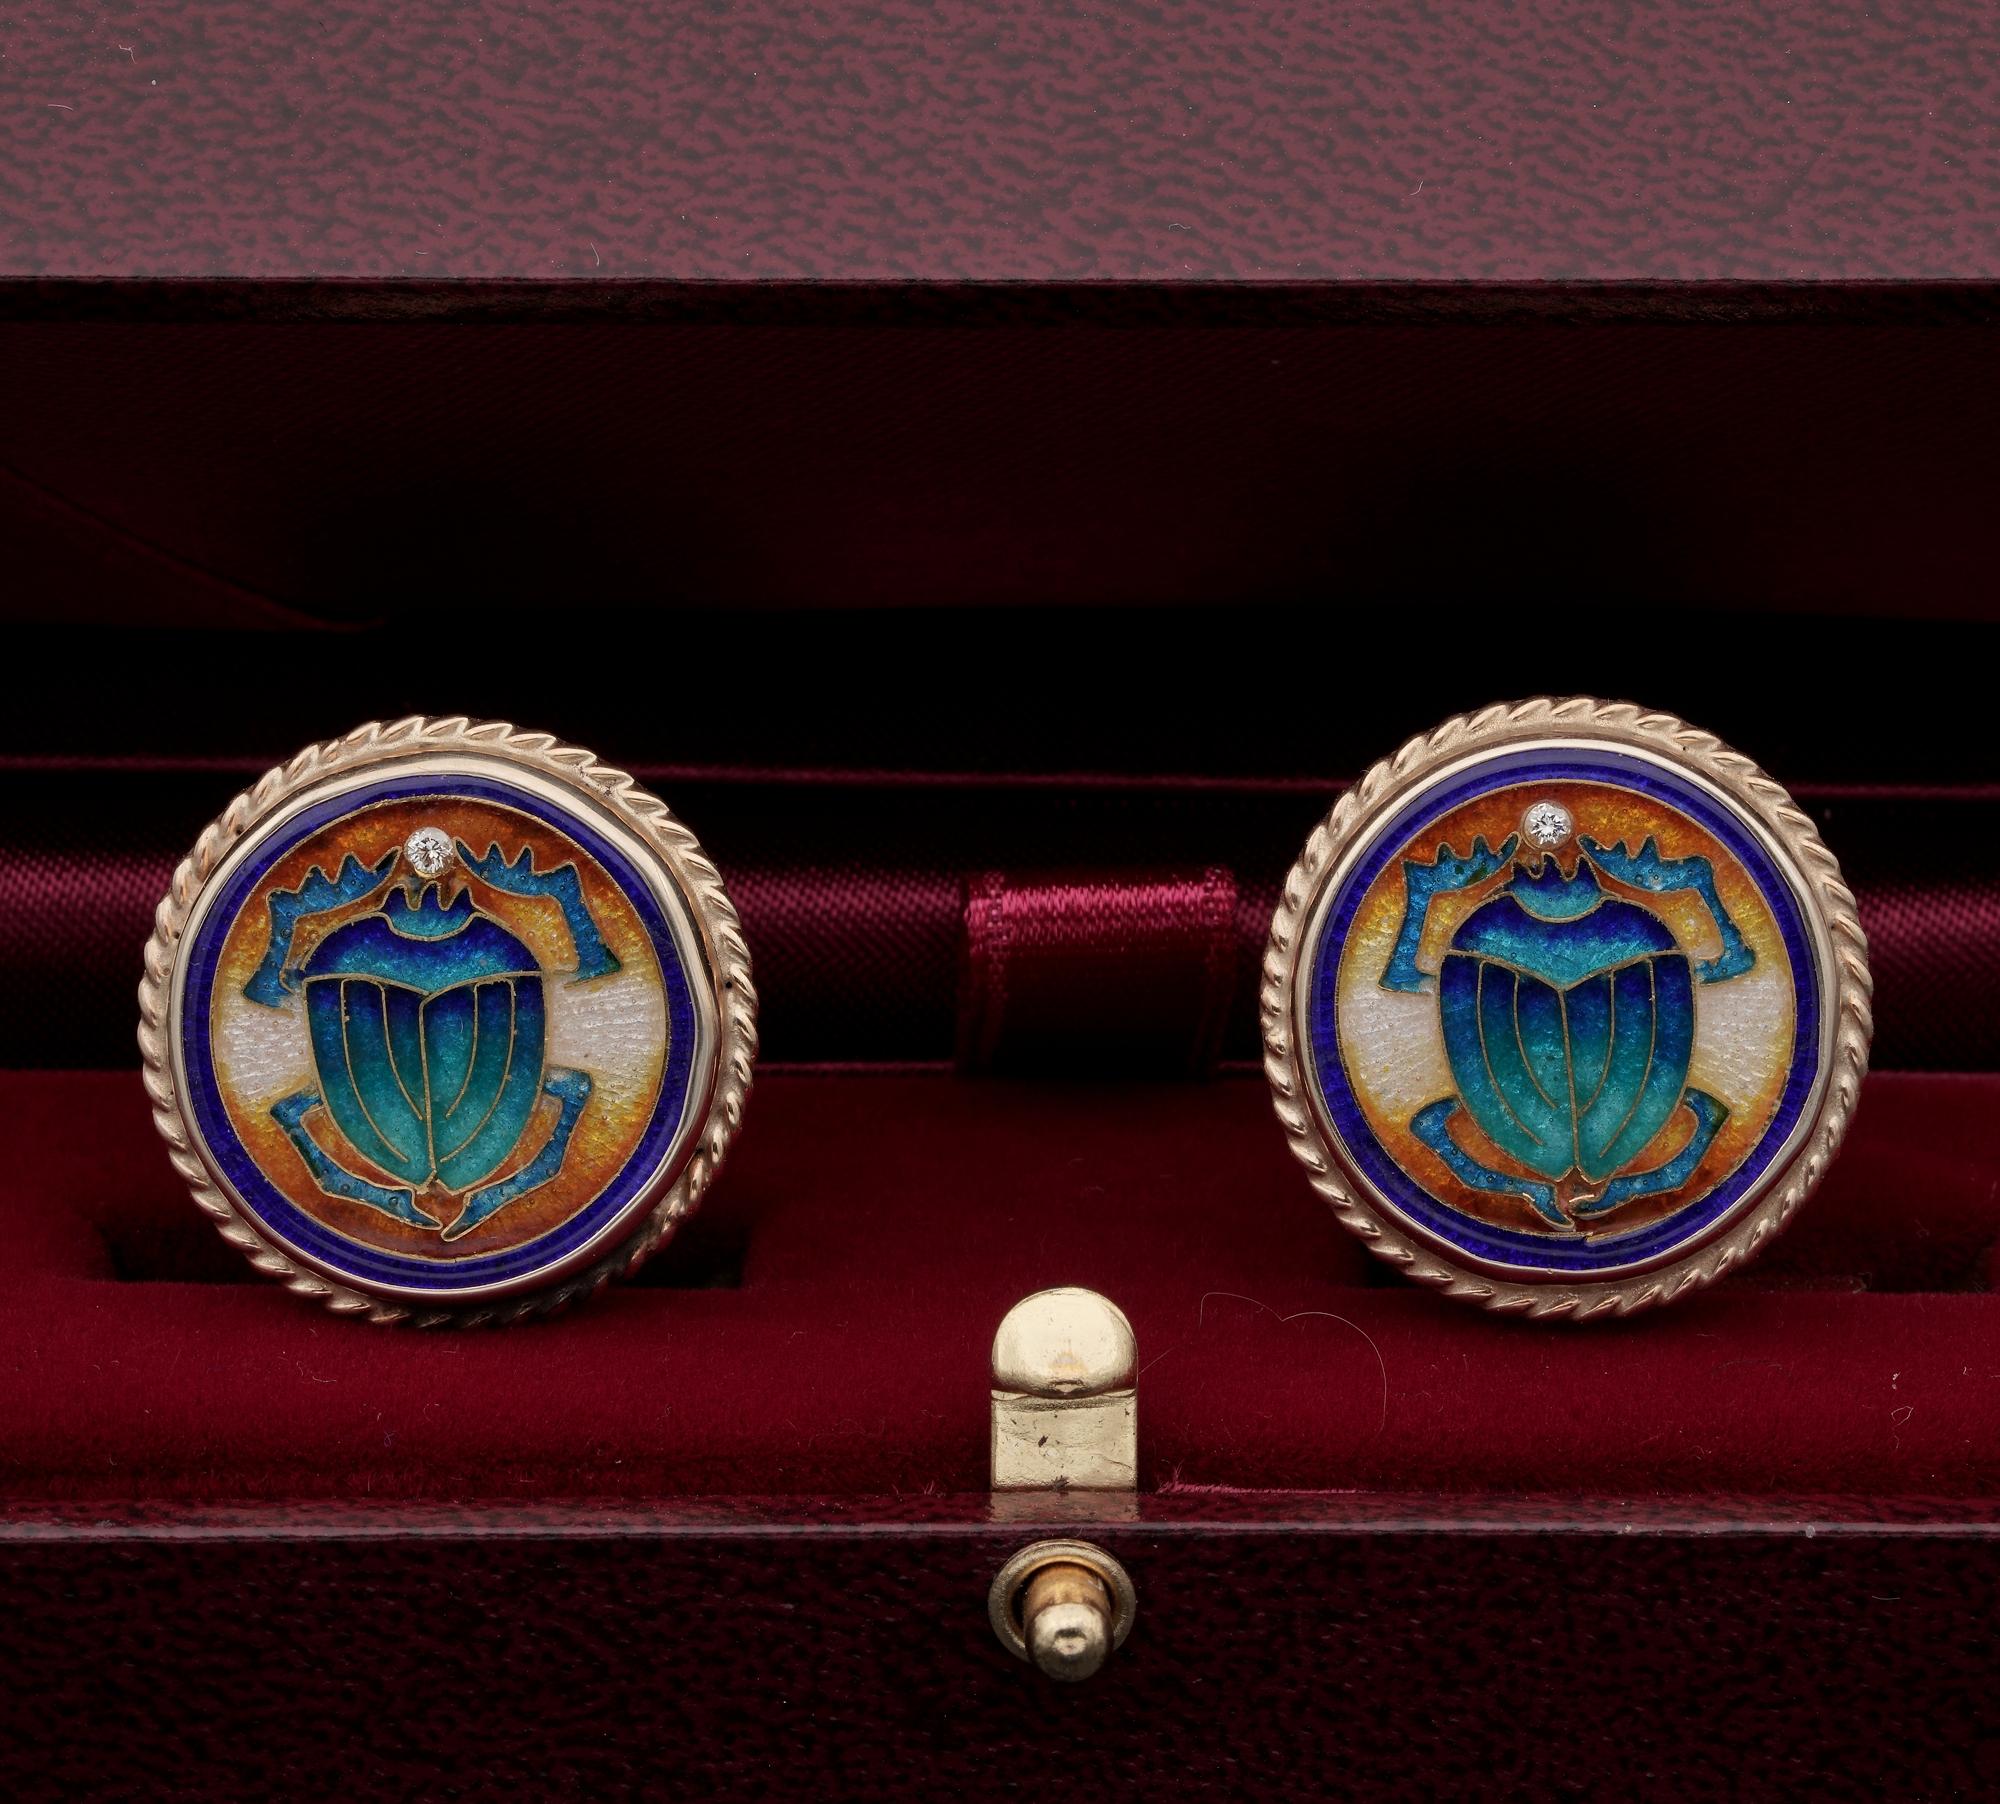 Les scarabées sont utilisés comme amulettes pour symboliser la richesse, comme monnaie d'échange et comme accessoires de mode depuis les Égyptiens.
Ces grands boutons de manchette superbement émaillés datent de 1940 env.
Fabriqué à la main par